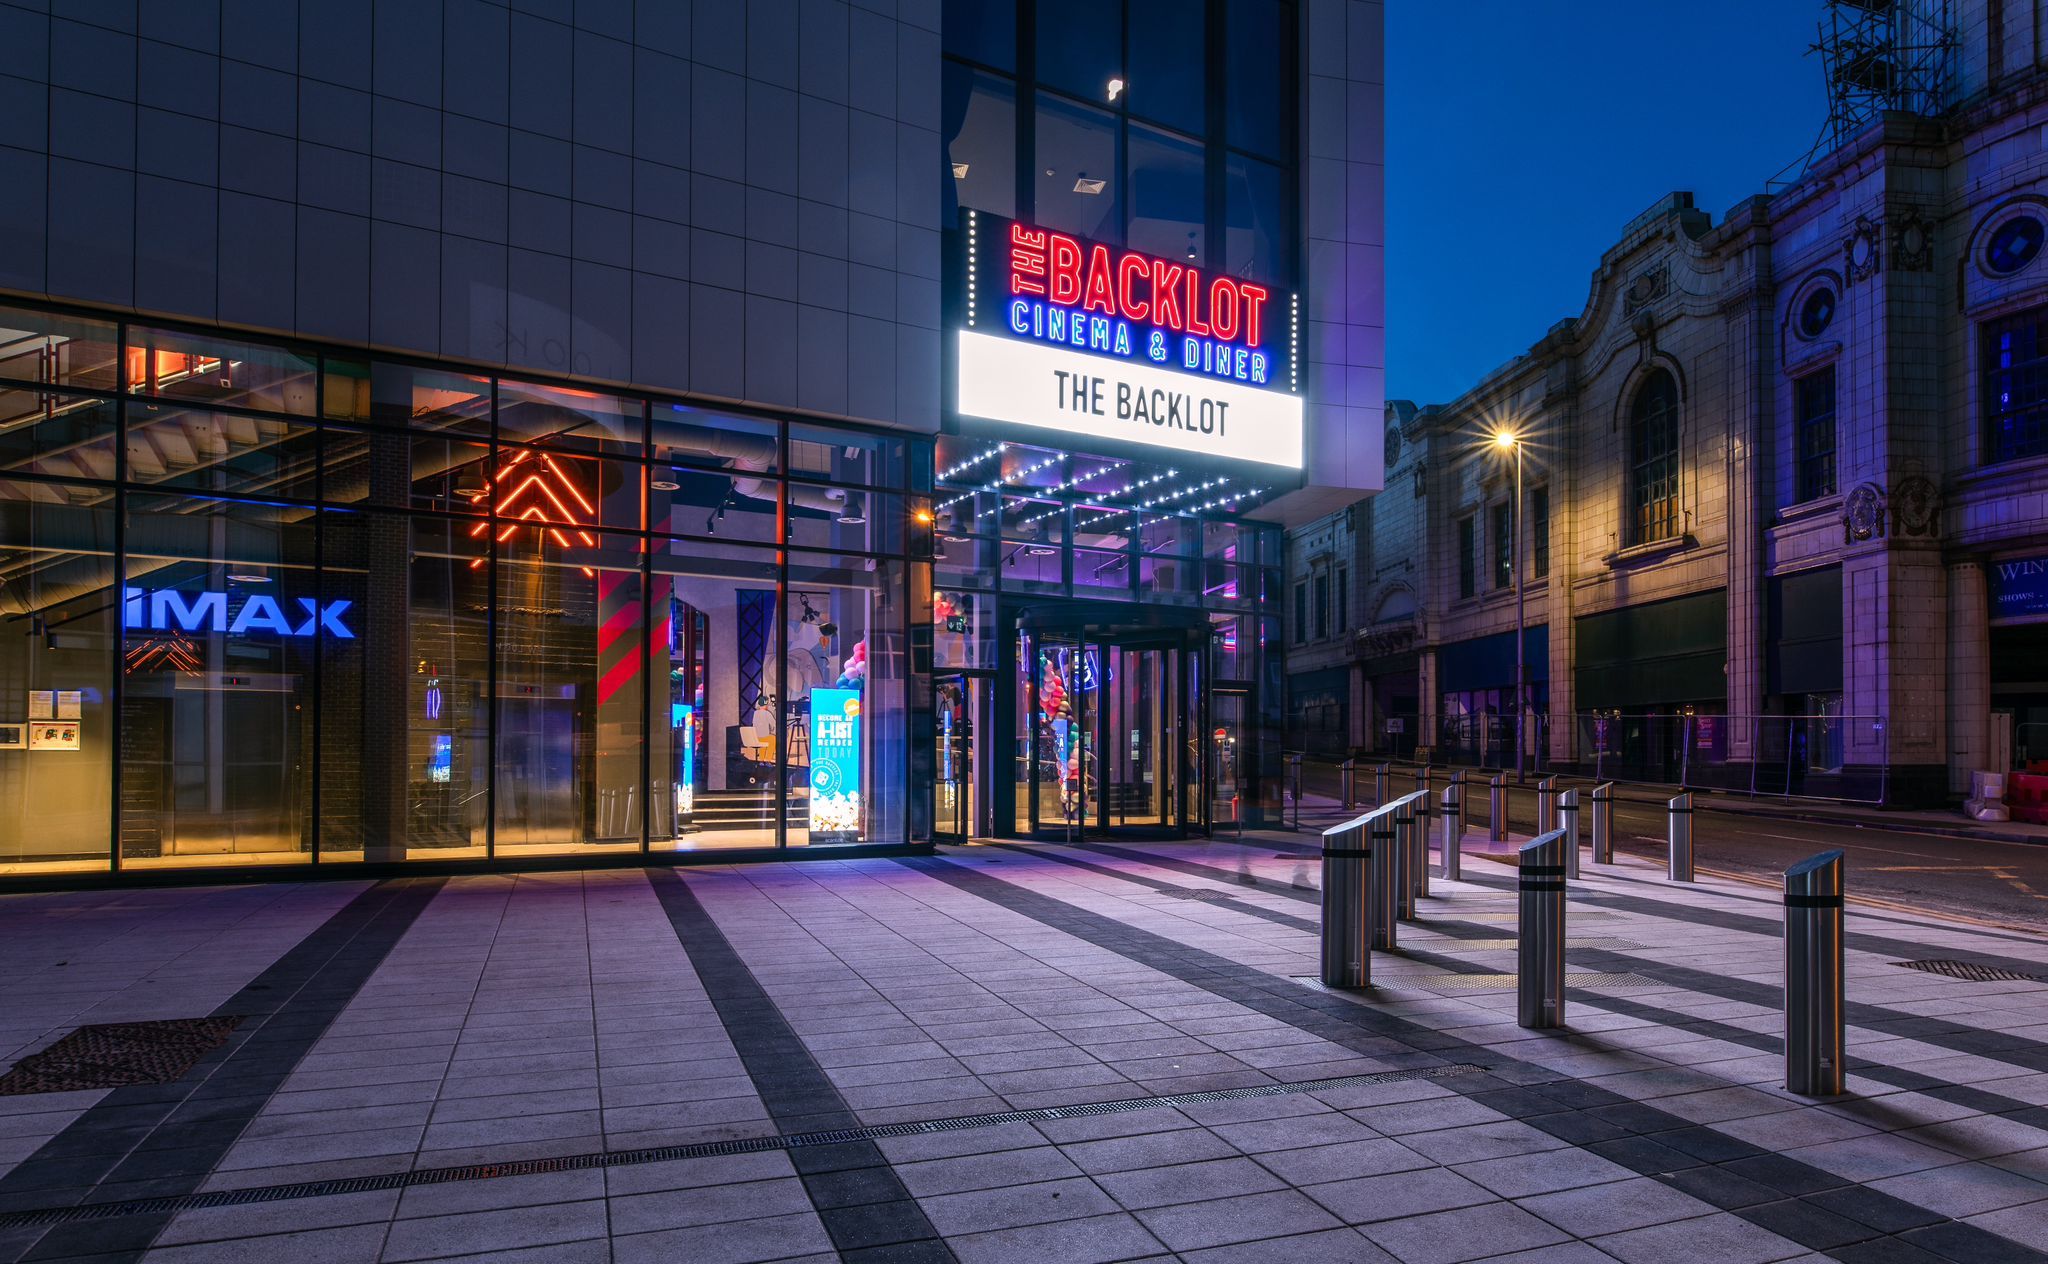 Backlot Cinema - Blackpool